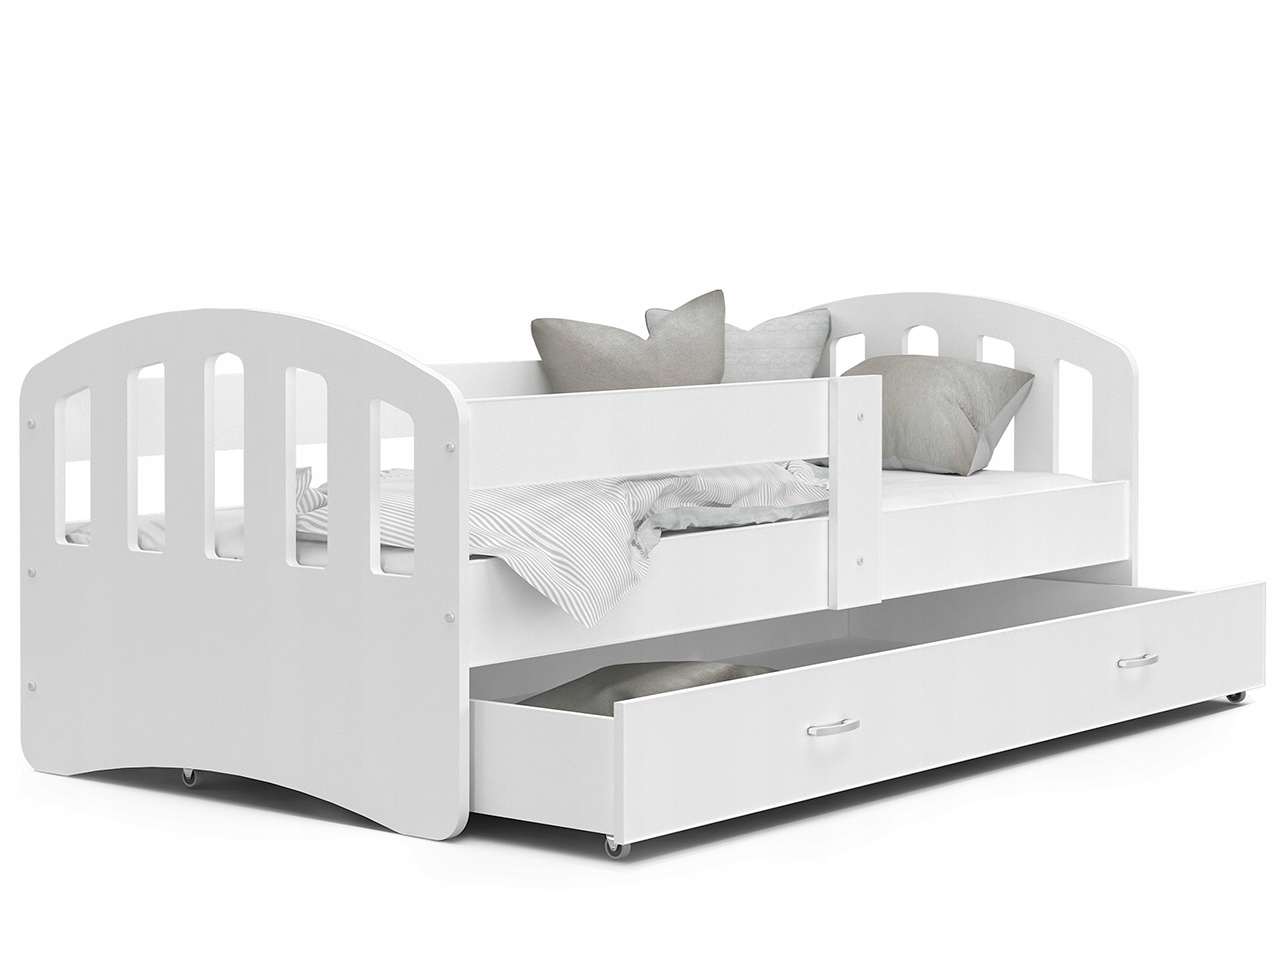 Otroške postelje - Otroška postelja Happy Premium + GRATIS LEŽIŠČE IZ PENE  - 80x180 - ZELENA BARVA / 208